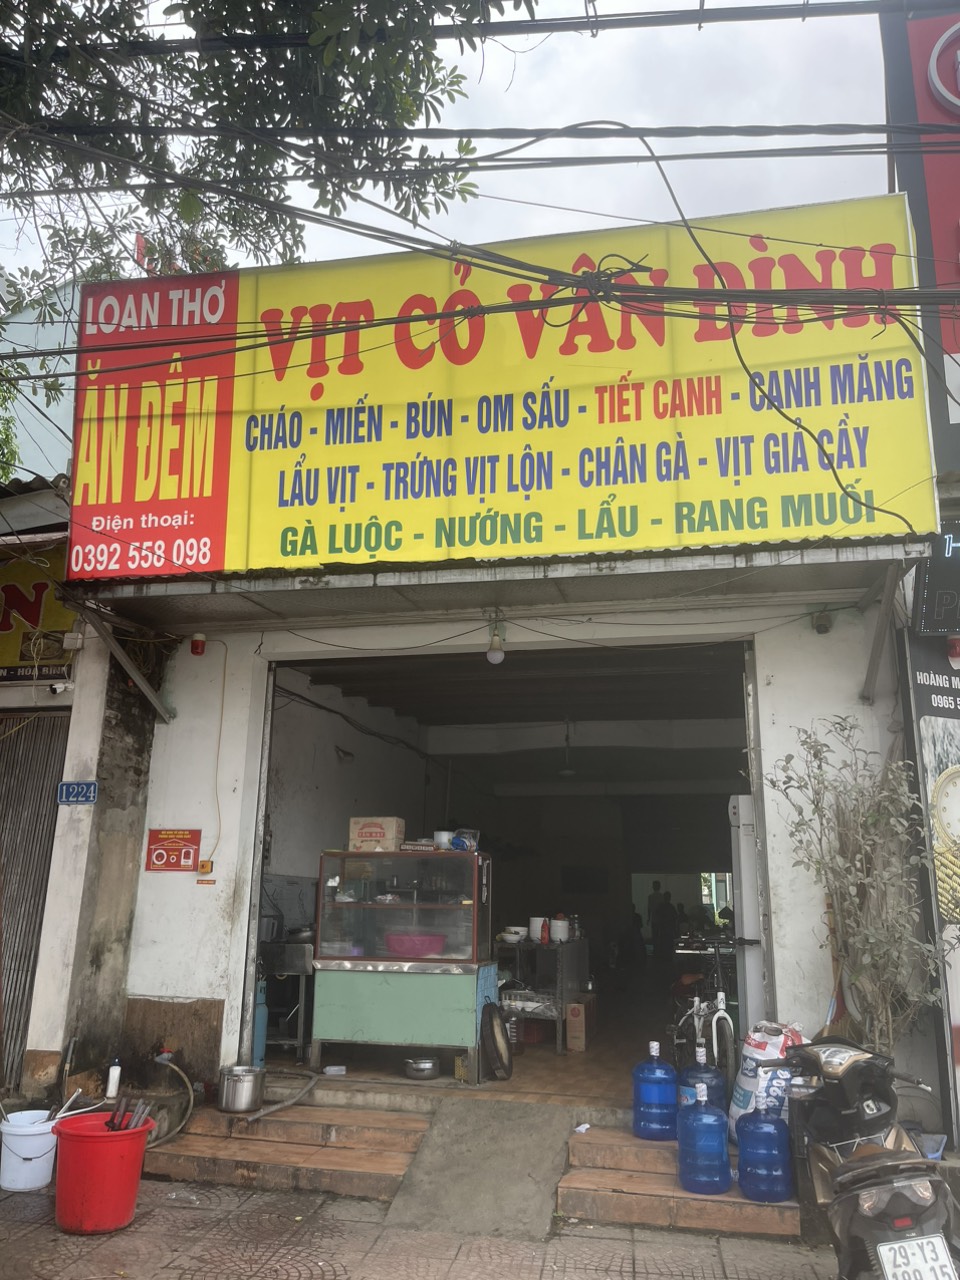 Bàn giao lắp đặt Máy rửa bát siêu âm tại Vịt Cỏ Vân Đình - Hà Nội